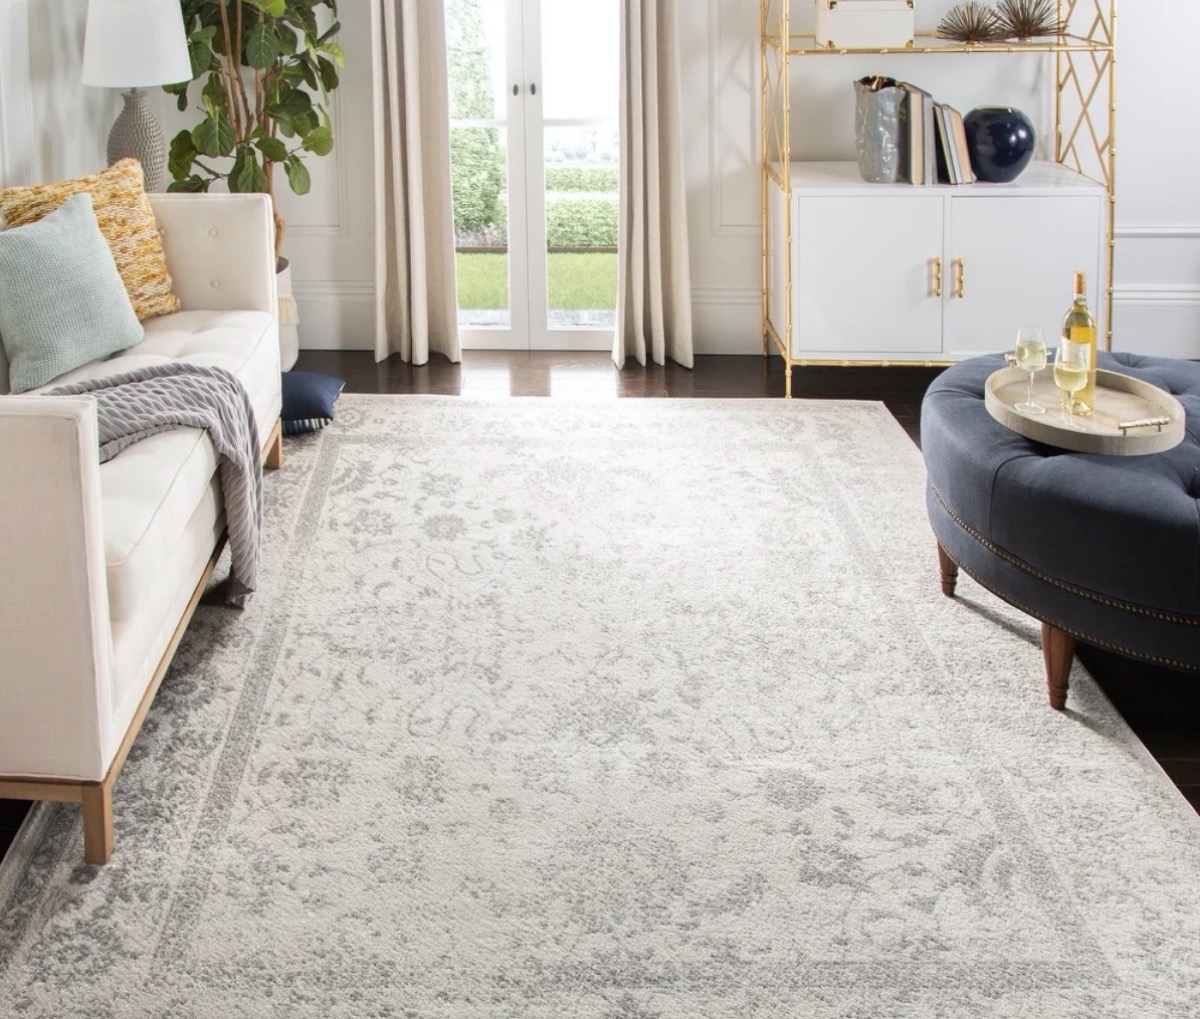 gray oriental rug in living room